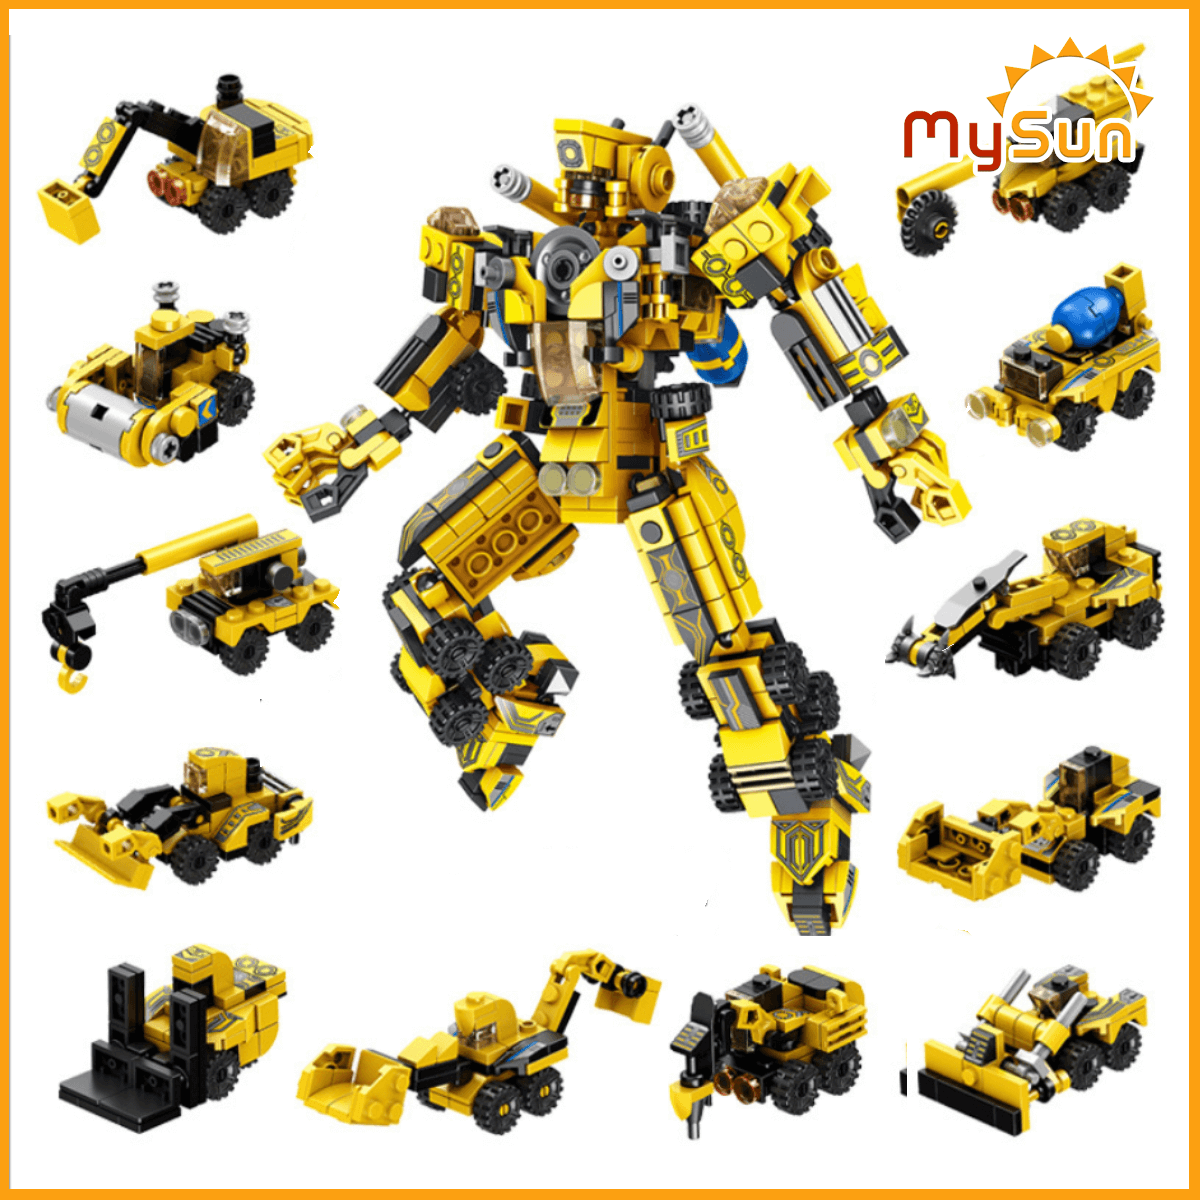 LEGO ROBOT biến hình Khổng lồ: Bạn đã từng mơ ước được tạo ra một chiếc robot khổng lồ từ đồ chơi Lego? Hãy xem hình ảnh liên quan để thấy người chơi Lego đã tạo nên một thế giới mới với những chiếc robot chuyên biệt. Bạn sẽ không phải thất vọng về những ý tưởng tuyệt vời này.